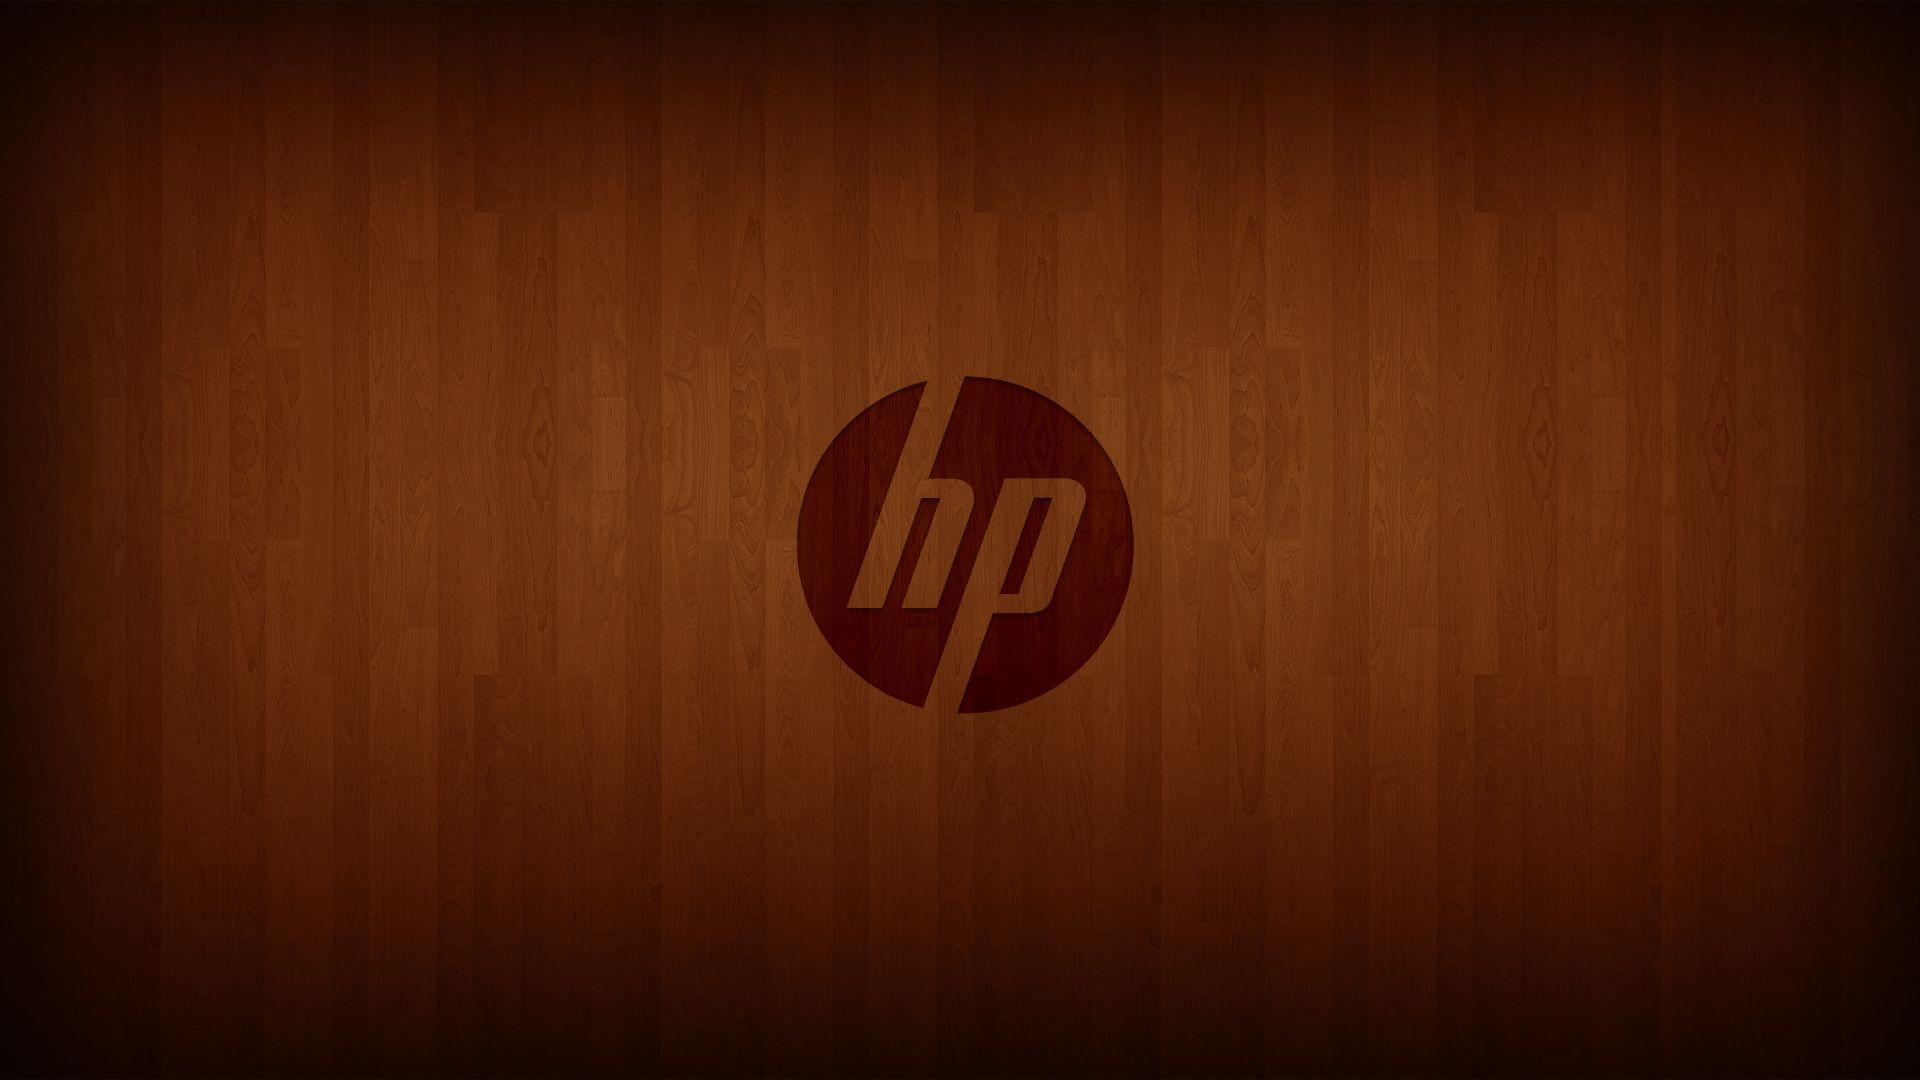 Hewlett Packard Wallpaper. Image Wallpaper. Hewlett